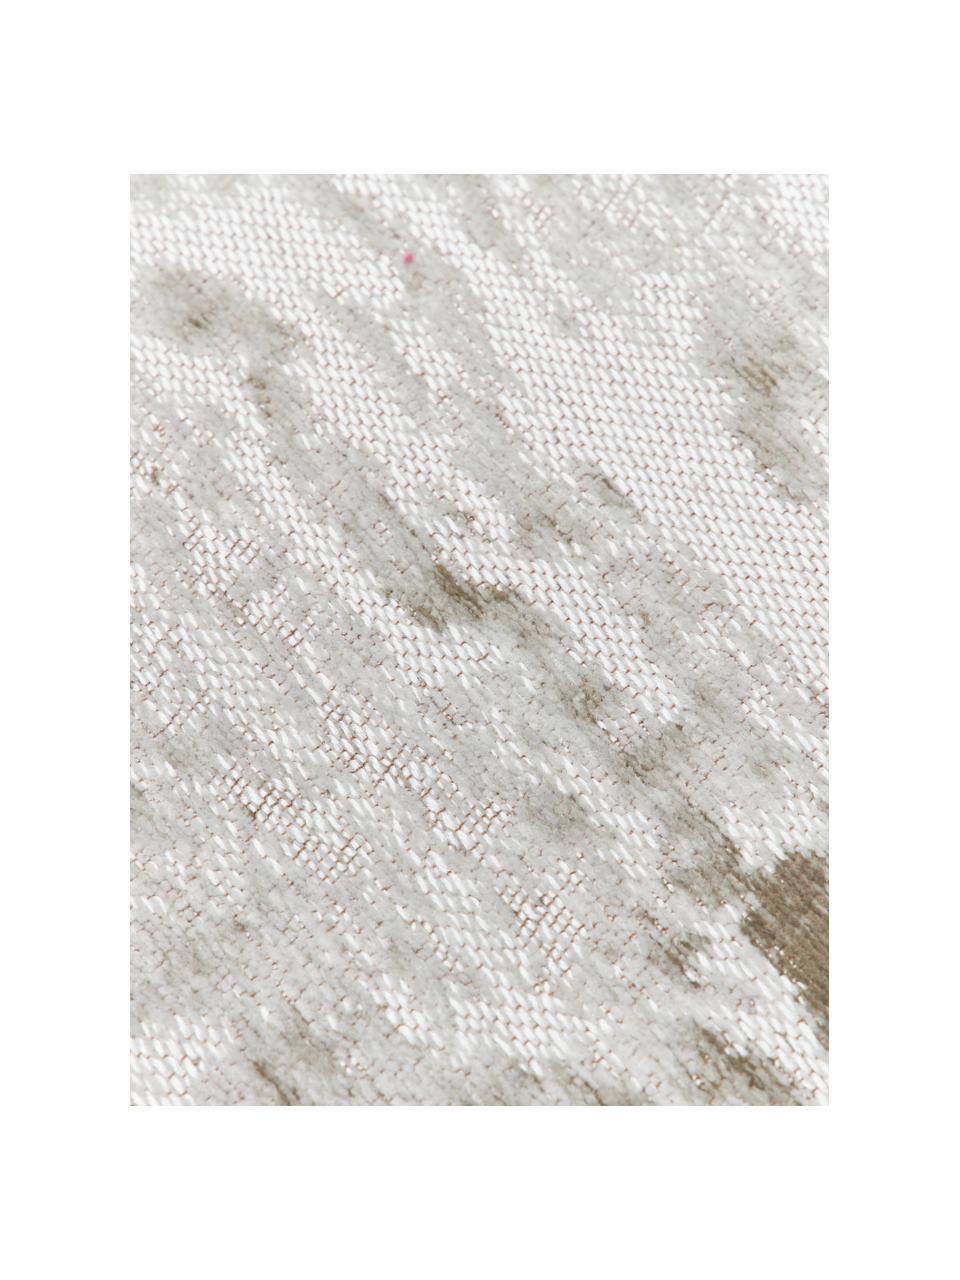 Flachgewebter Baumwollteppich Louisa in Silber/Grau/Beige, Flor: 85% Baumwolle, 15% Polyes, Grau, Beige, Silberfarben, B 80 x L 150 cm (Größe XS)